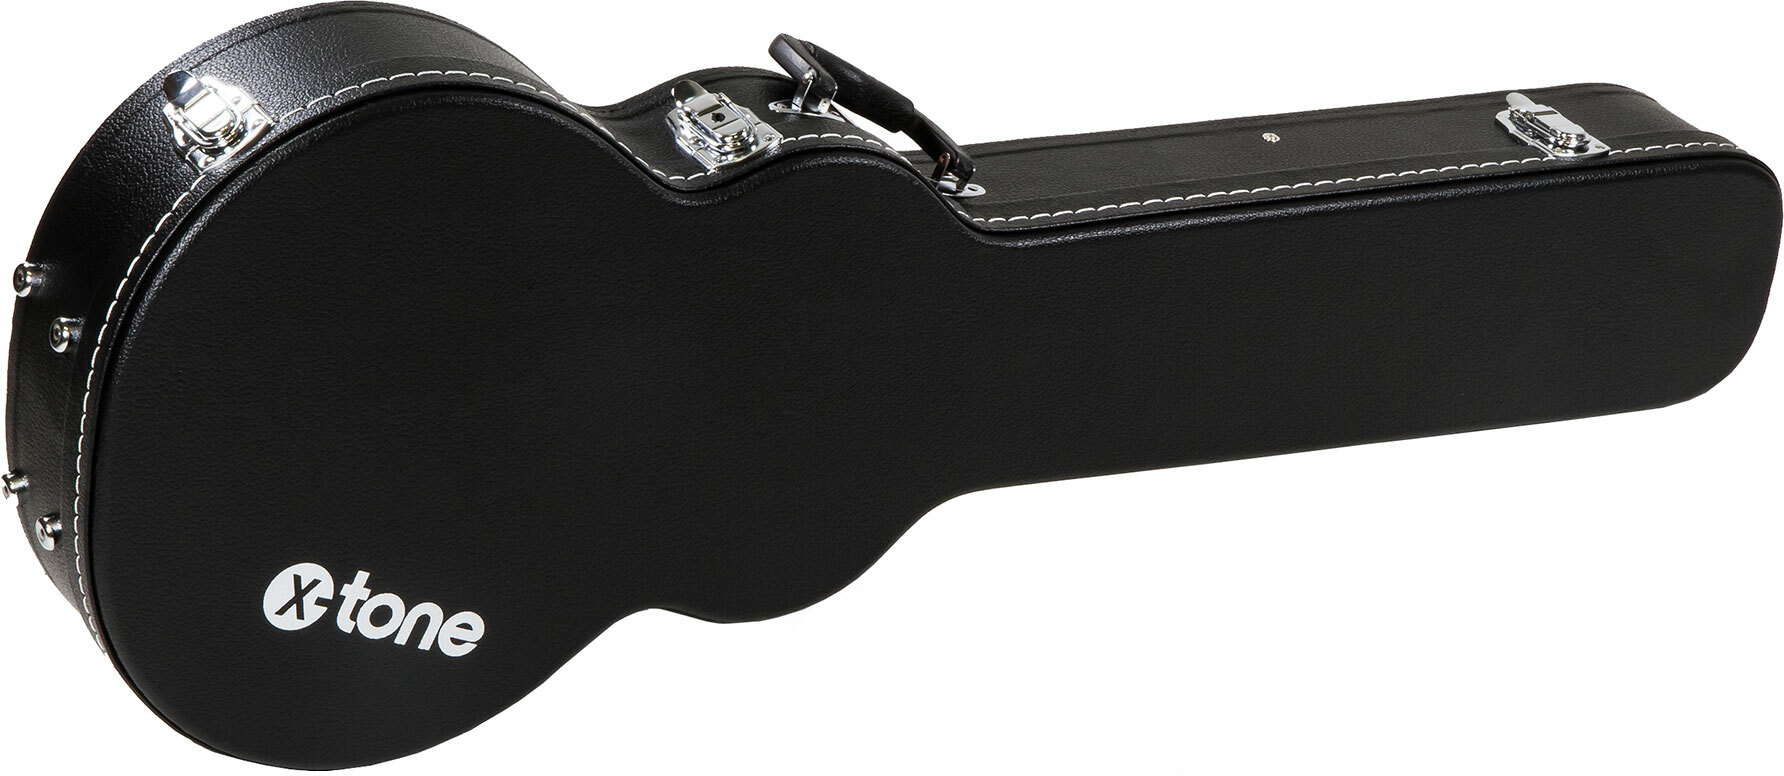 X-tone 1502 Standard Electrique Les Paul En Forme Black - Elektrische gitaarkoffer - Main picture